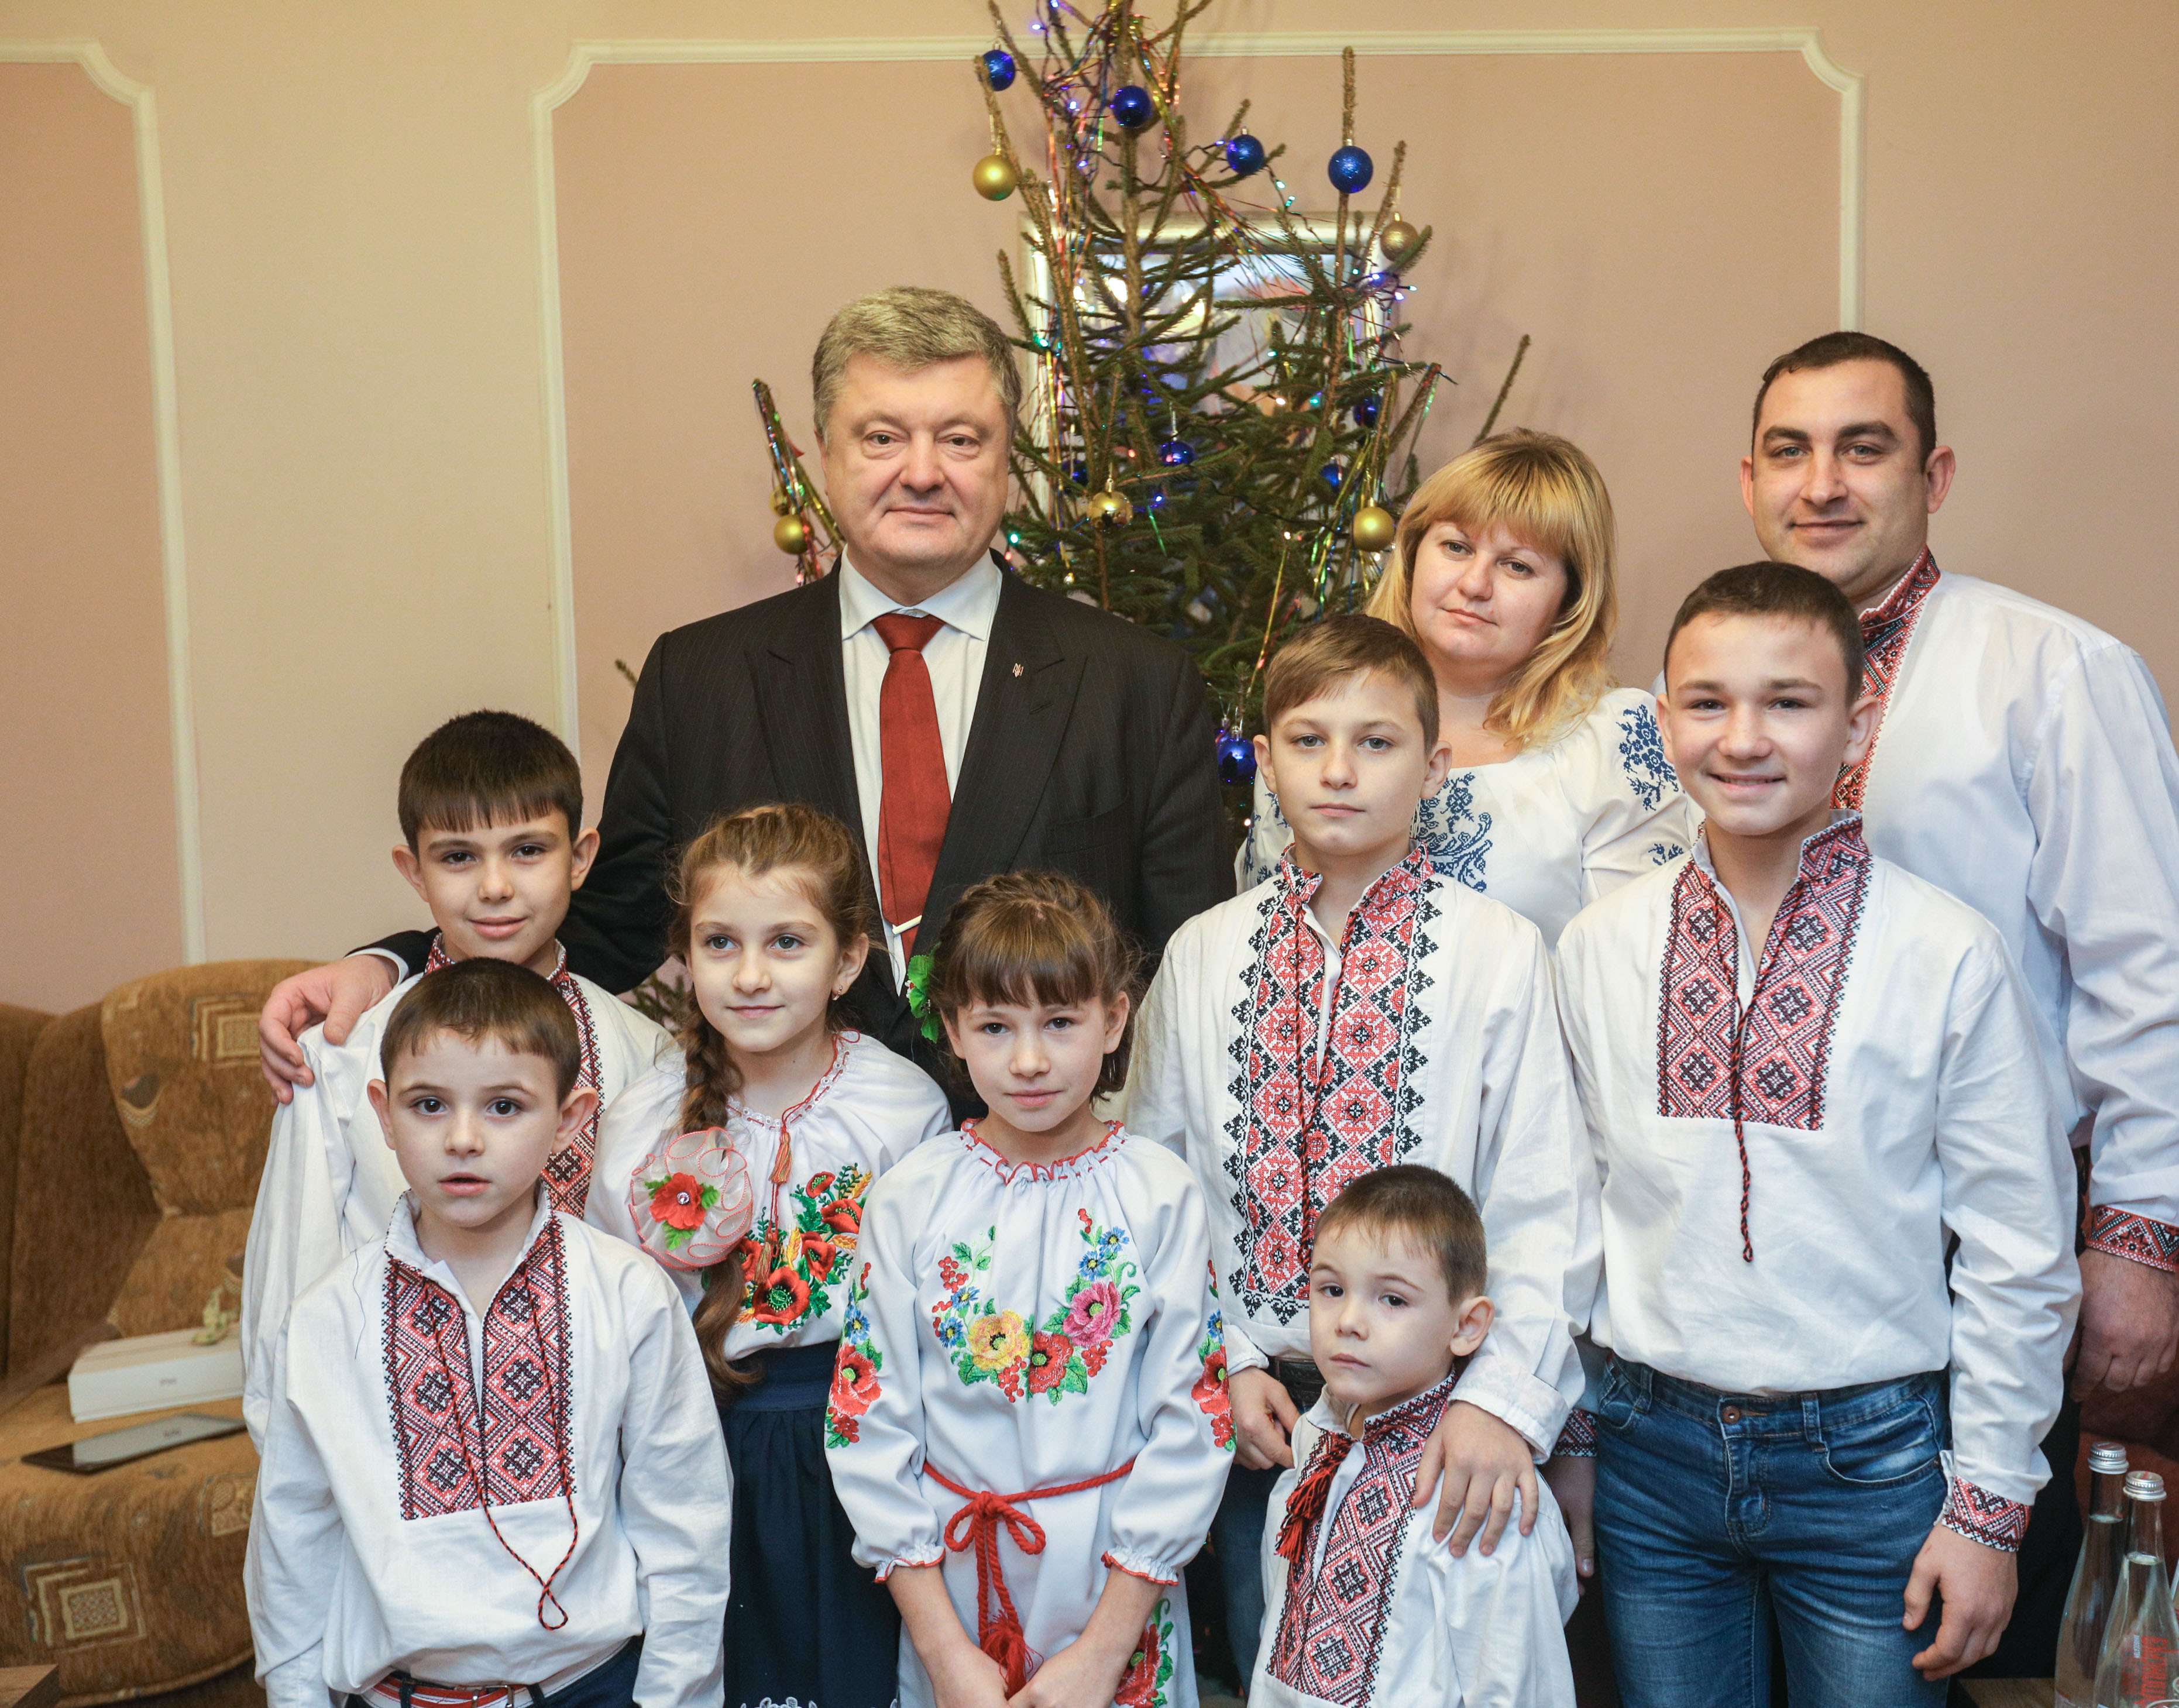 Дитячих будинків сімейного типу, як у родини Біленків, в Україні стає дедалі більше. Фото з сайту president.gov.ua